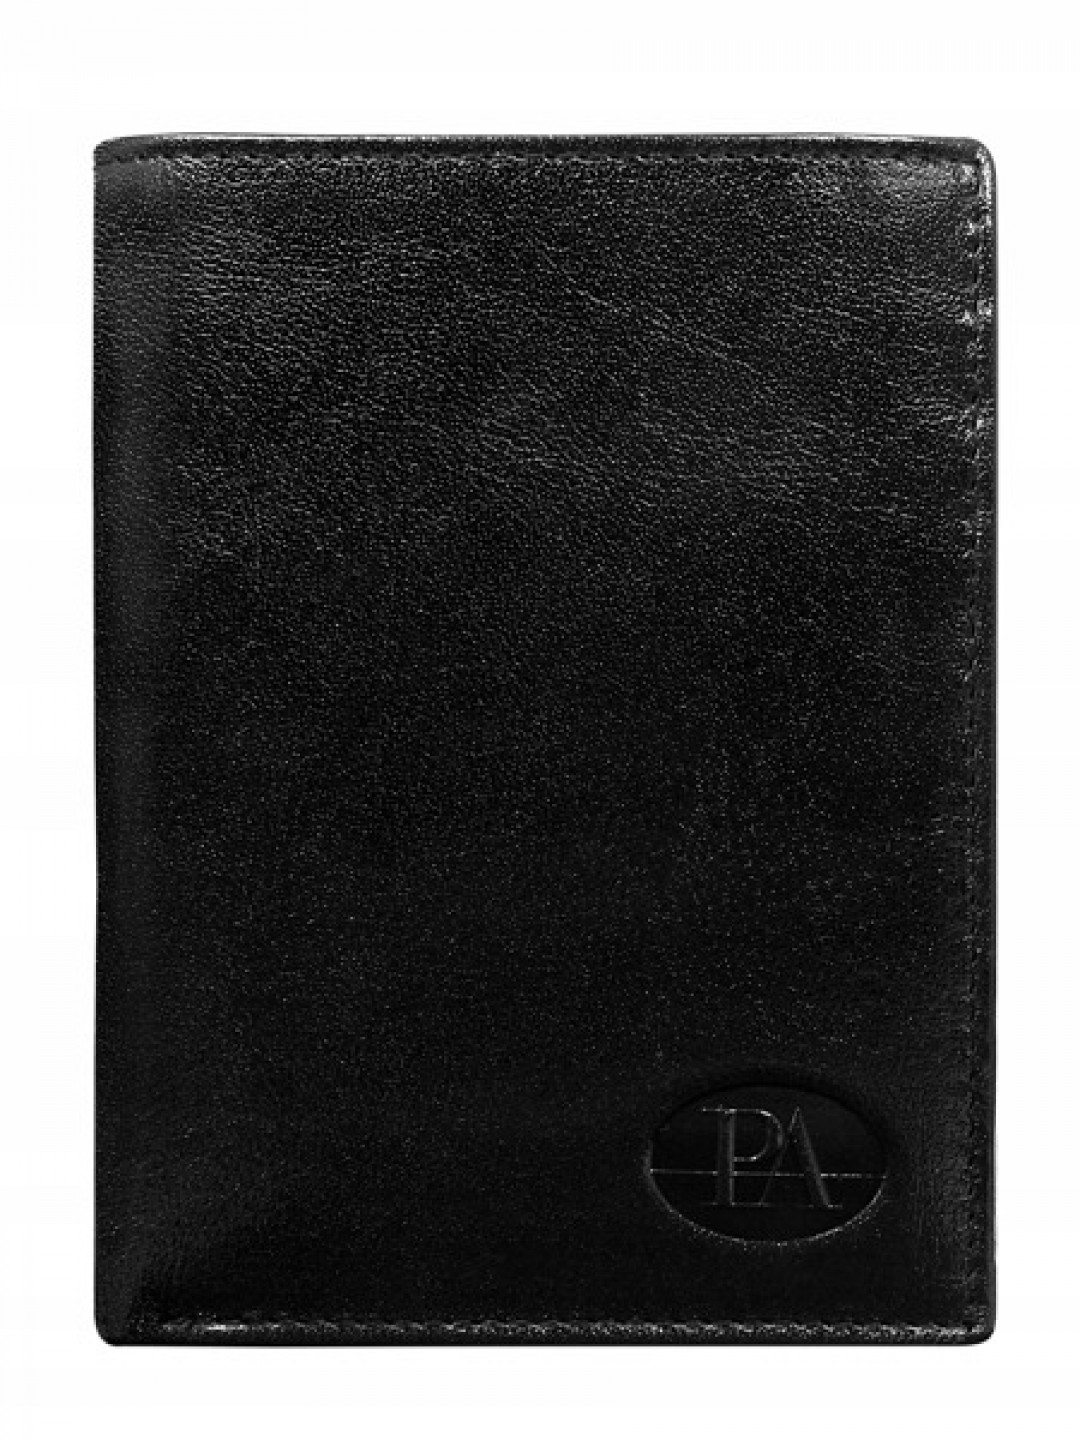 Elegantní pánská kožená peněženka Franco černá bez přezky